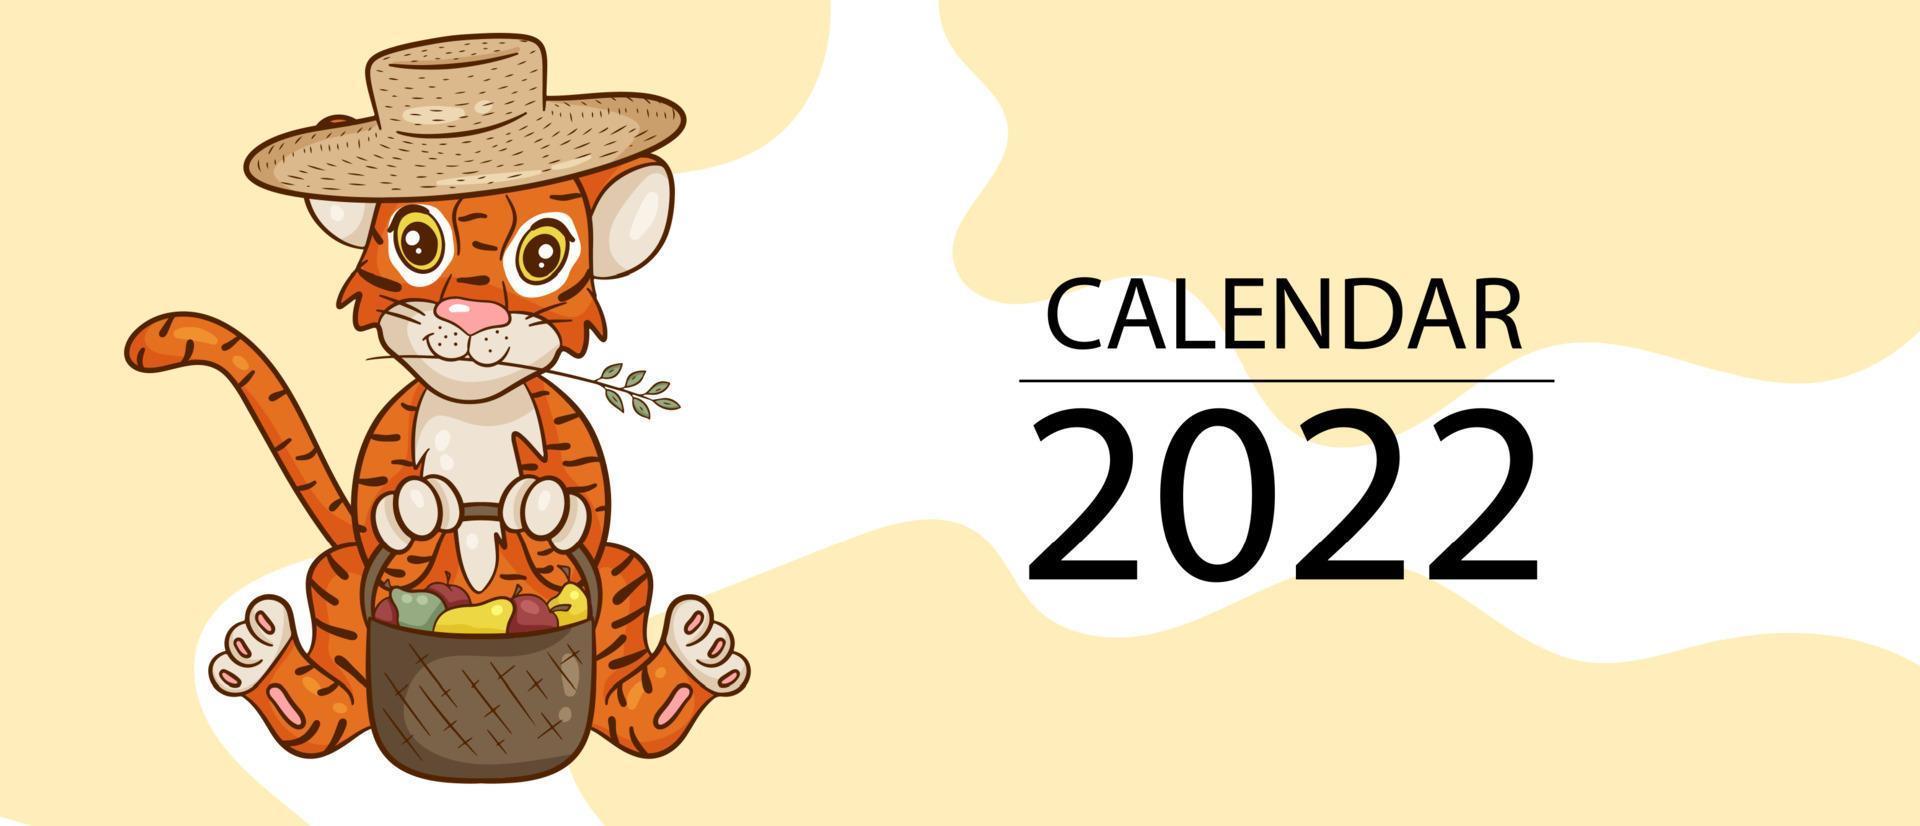 modello di progettazione del calendario per il 2022, l'anno della tigre secondo il calendario cinese o orientale, con un'illustrazione della tigre. copertina per il calendario per il 2022. vettore